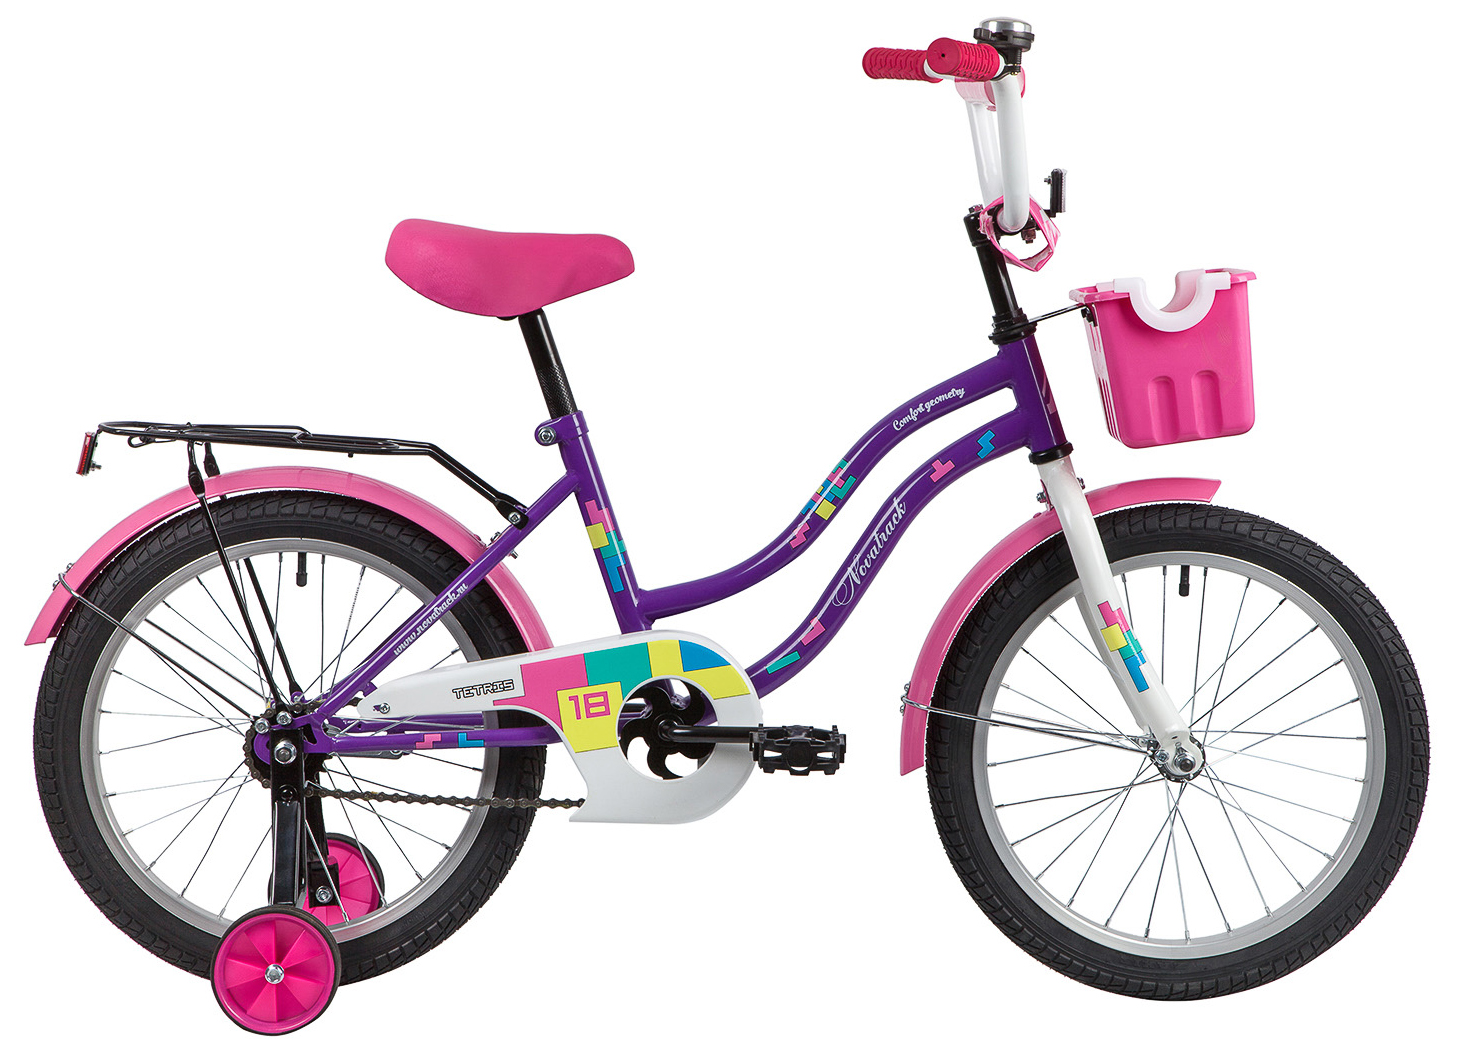  Отзывы о Детском велосипеде Novatrack Tetris 18 2020